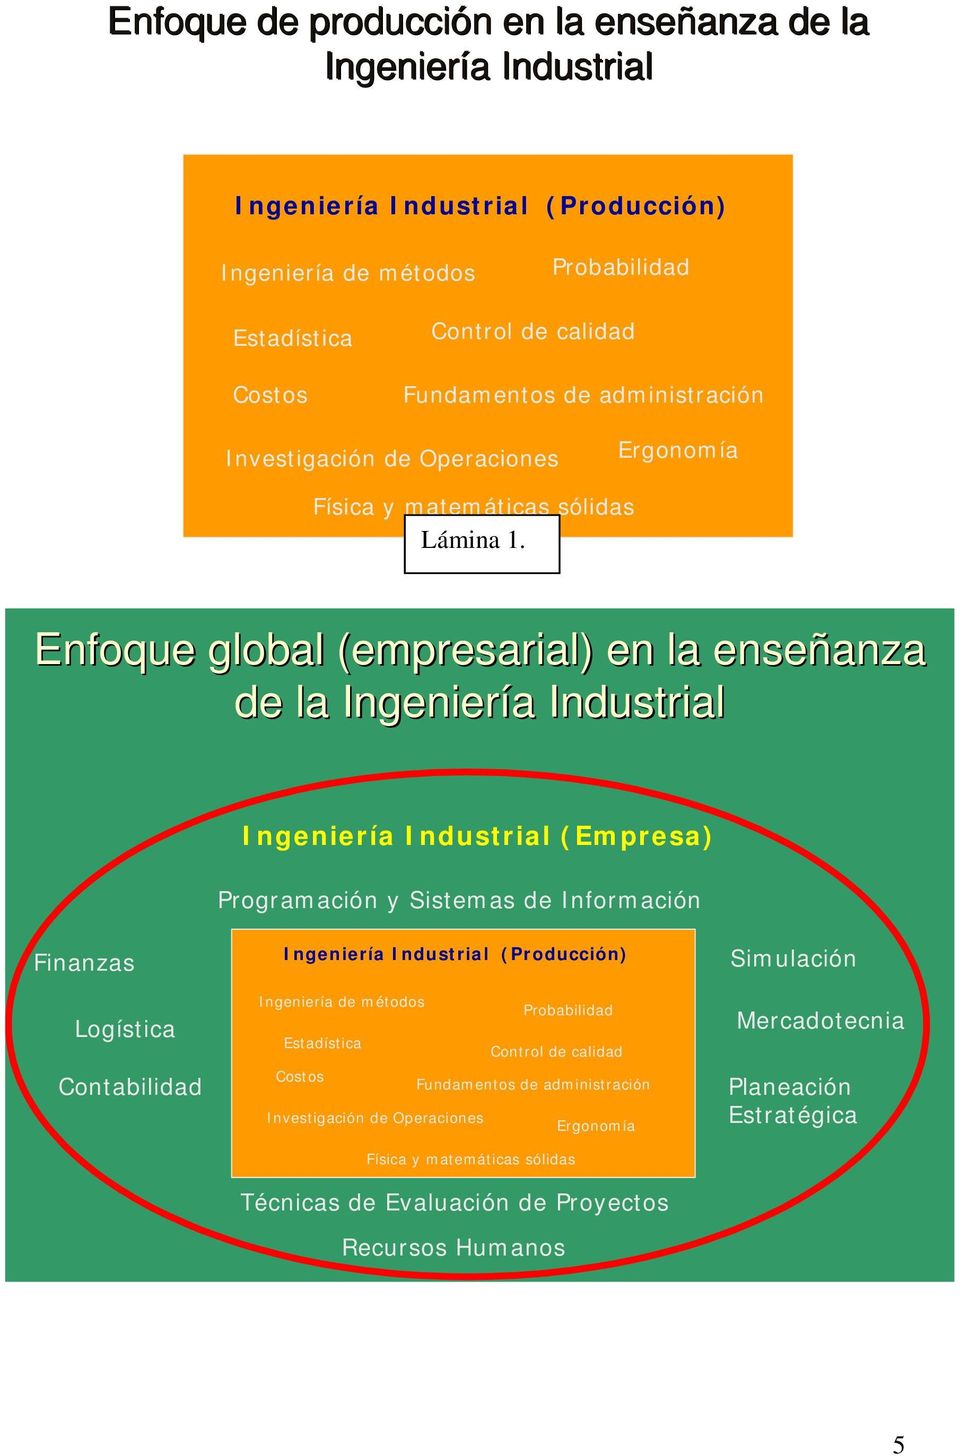 Enfoque global (empresarial) en la enseñanza de la Ingeniería Industrial Ingeniería Industrial (Empresa) Programación y Sistemas de Información Finanzas Logística Contabilidad Ingeniería